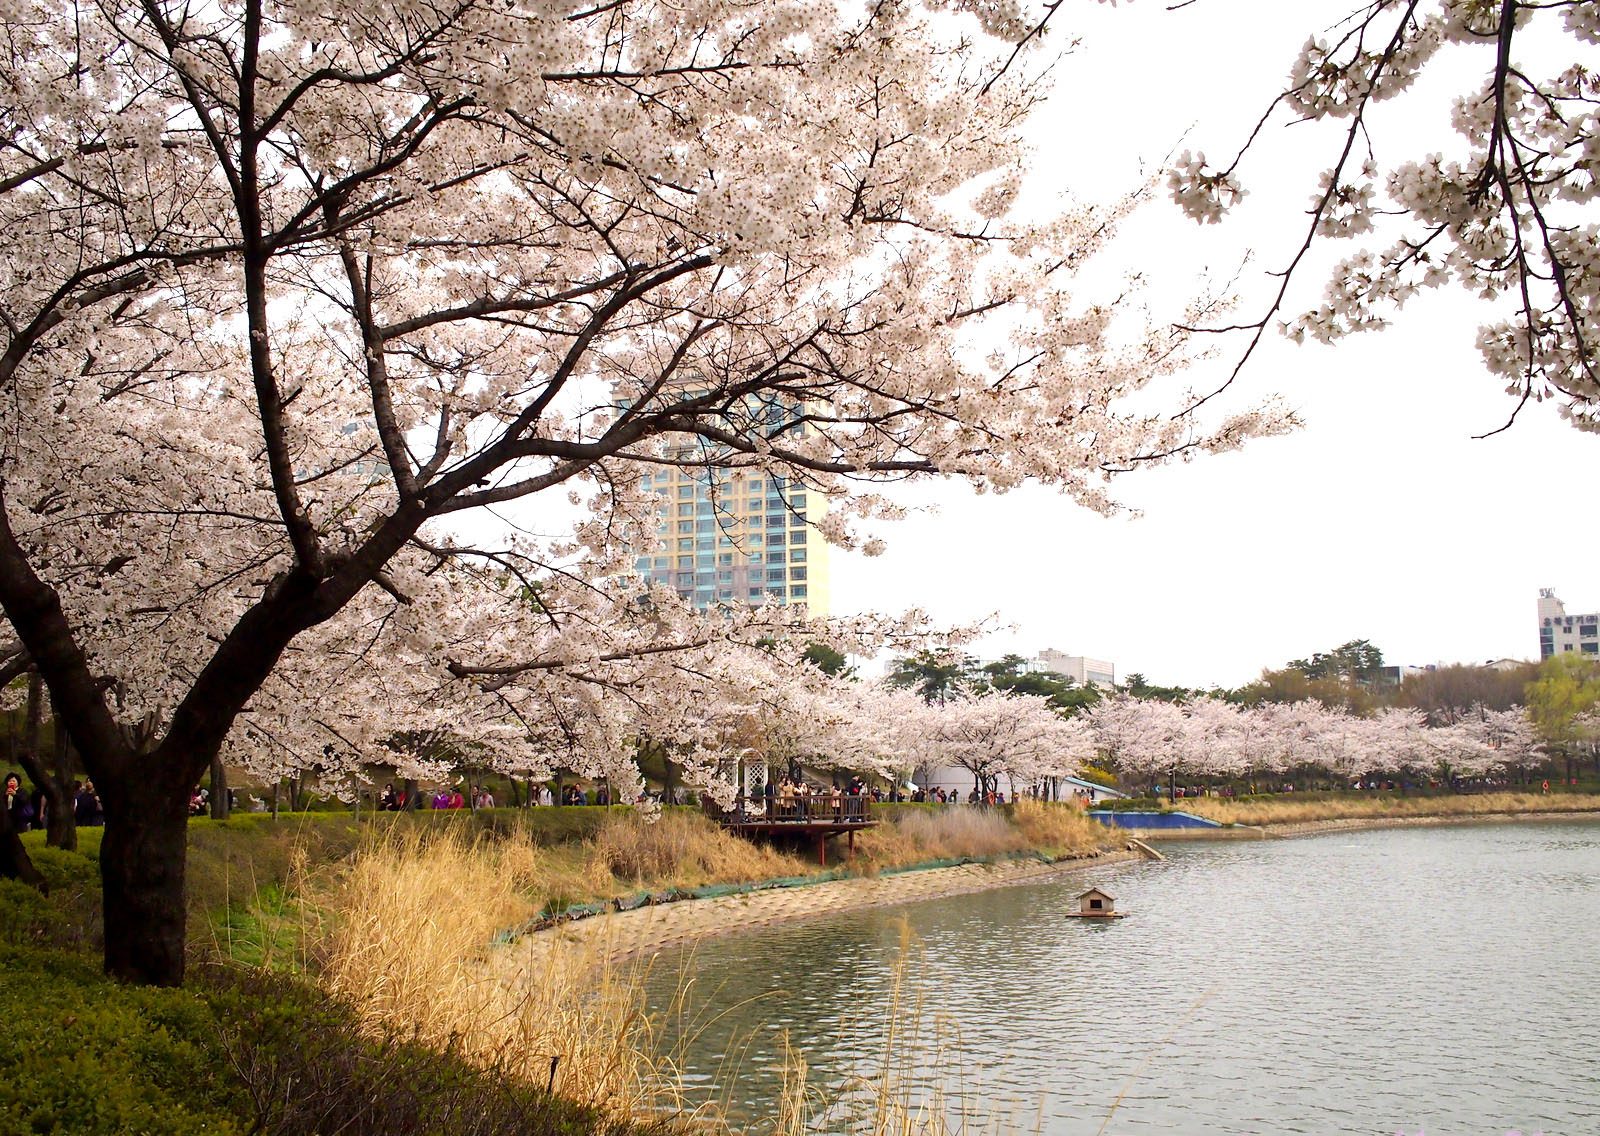 Cảnh đẹp mê hoặc lòng người tại hồ Seokchon ở Hàn Quốc